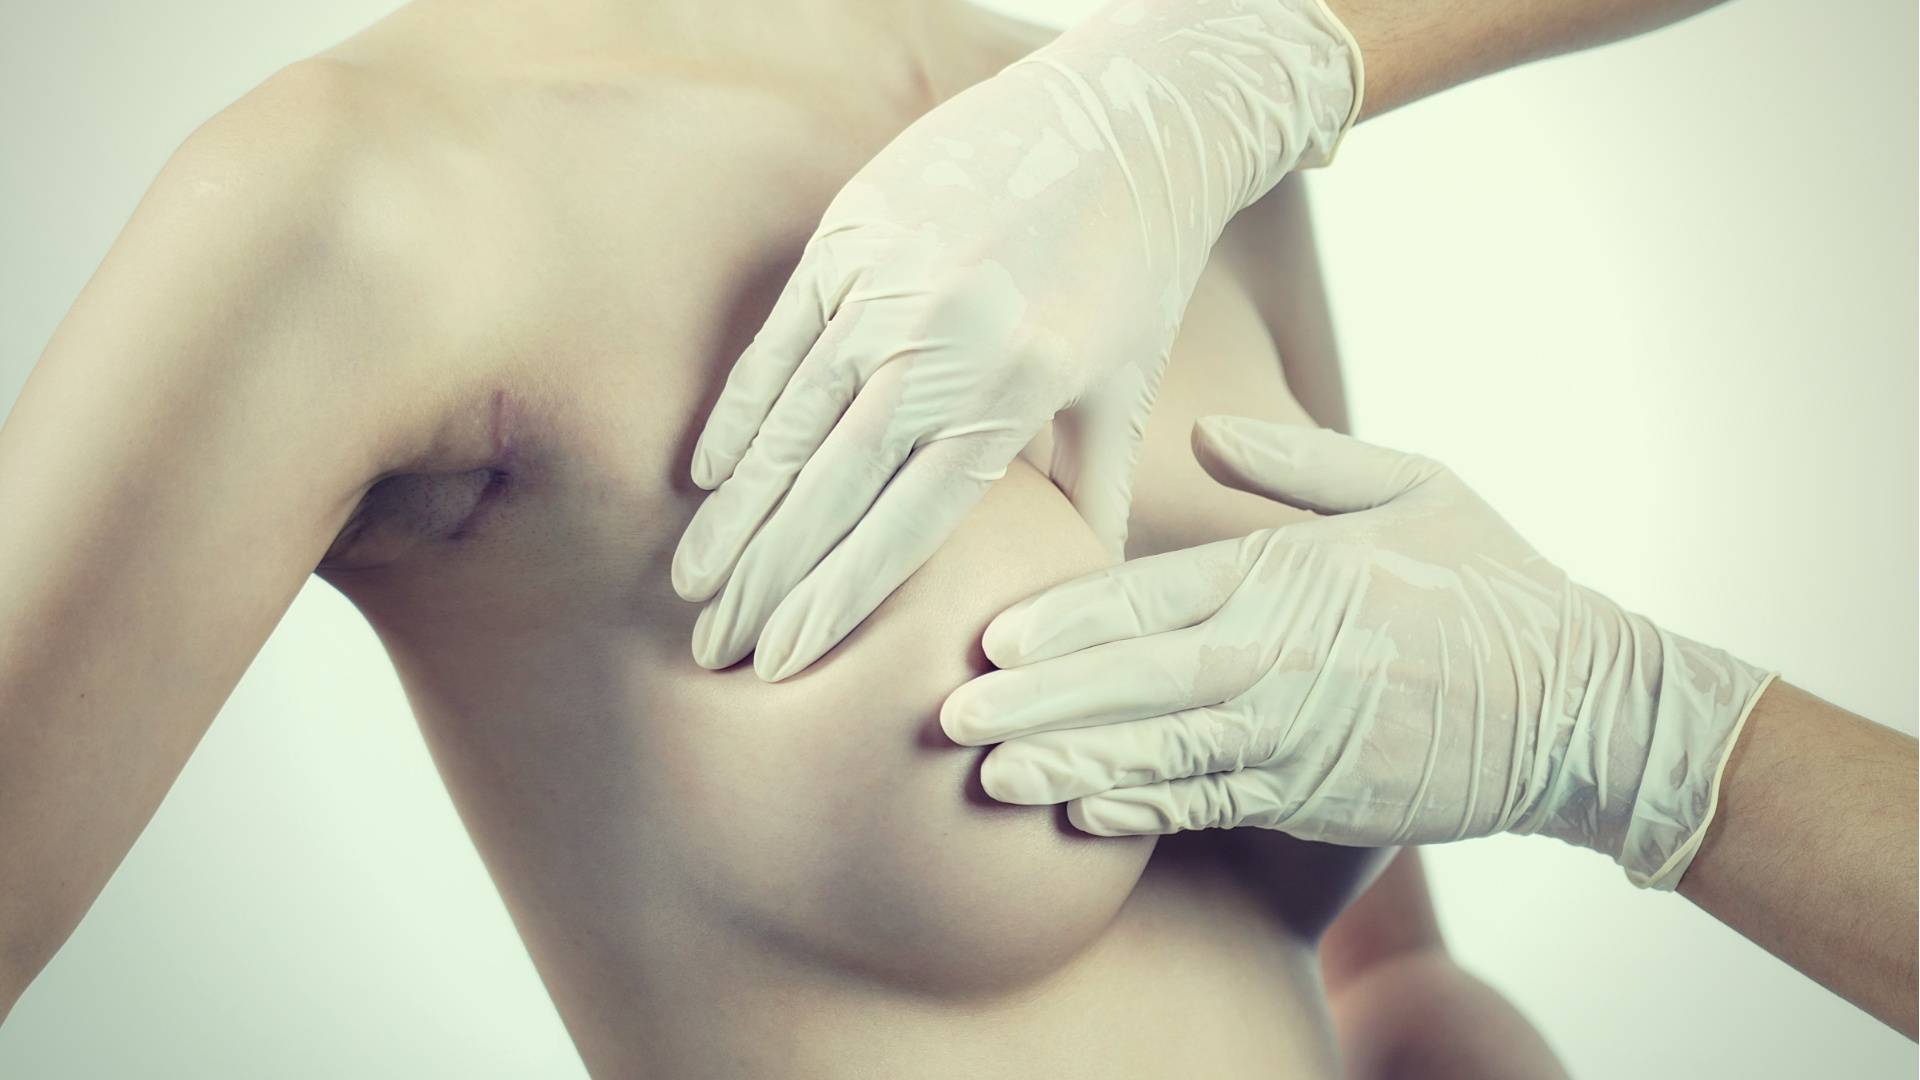 Implantation des seins Suppression : Principales choses Vous devez savoir avant d'entrer en chirurgie